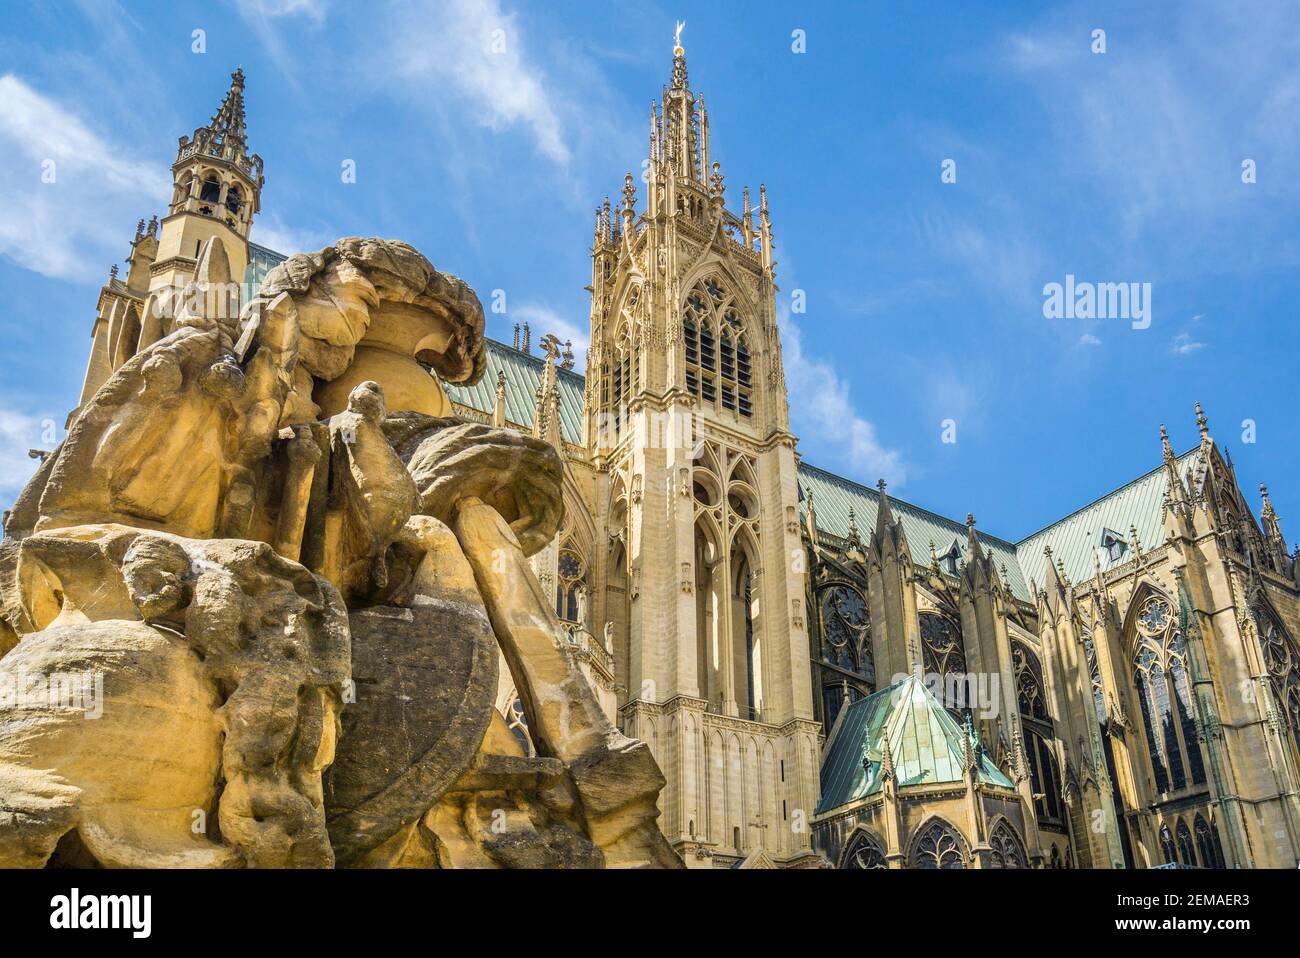 Eine der Place d'Armes Martial Symbolism Skulpturen mit Blick auf Metz Kathedrale La Mutte Turm und Horloge Turm, Metz, Lothringen, Mosel Abteilung, Stockfoto